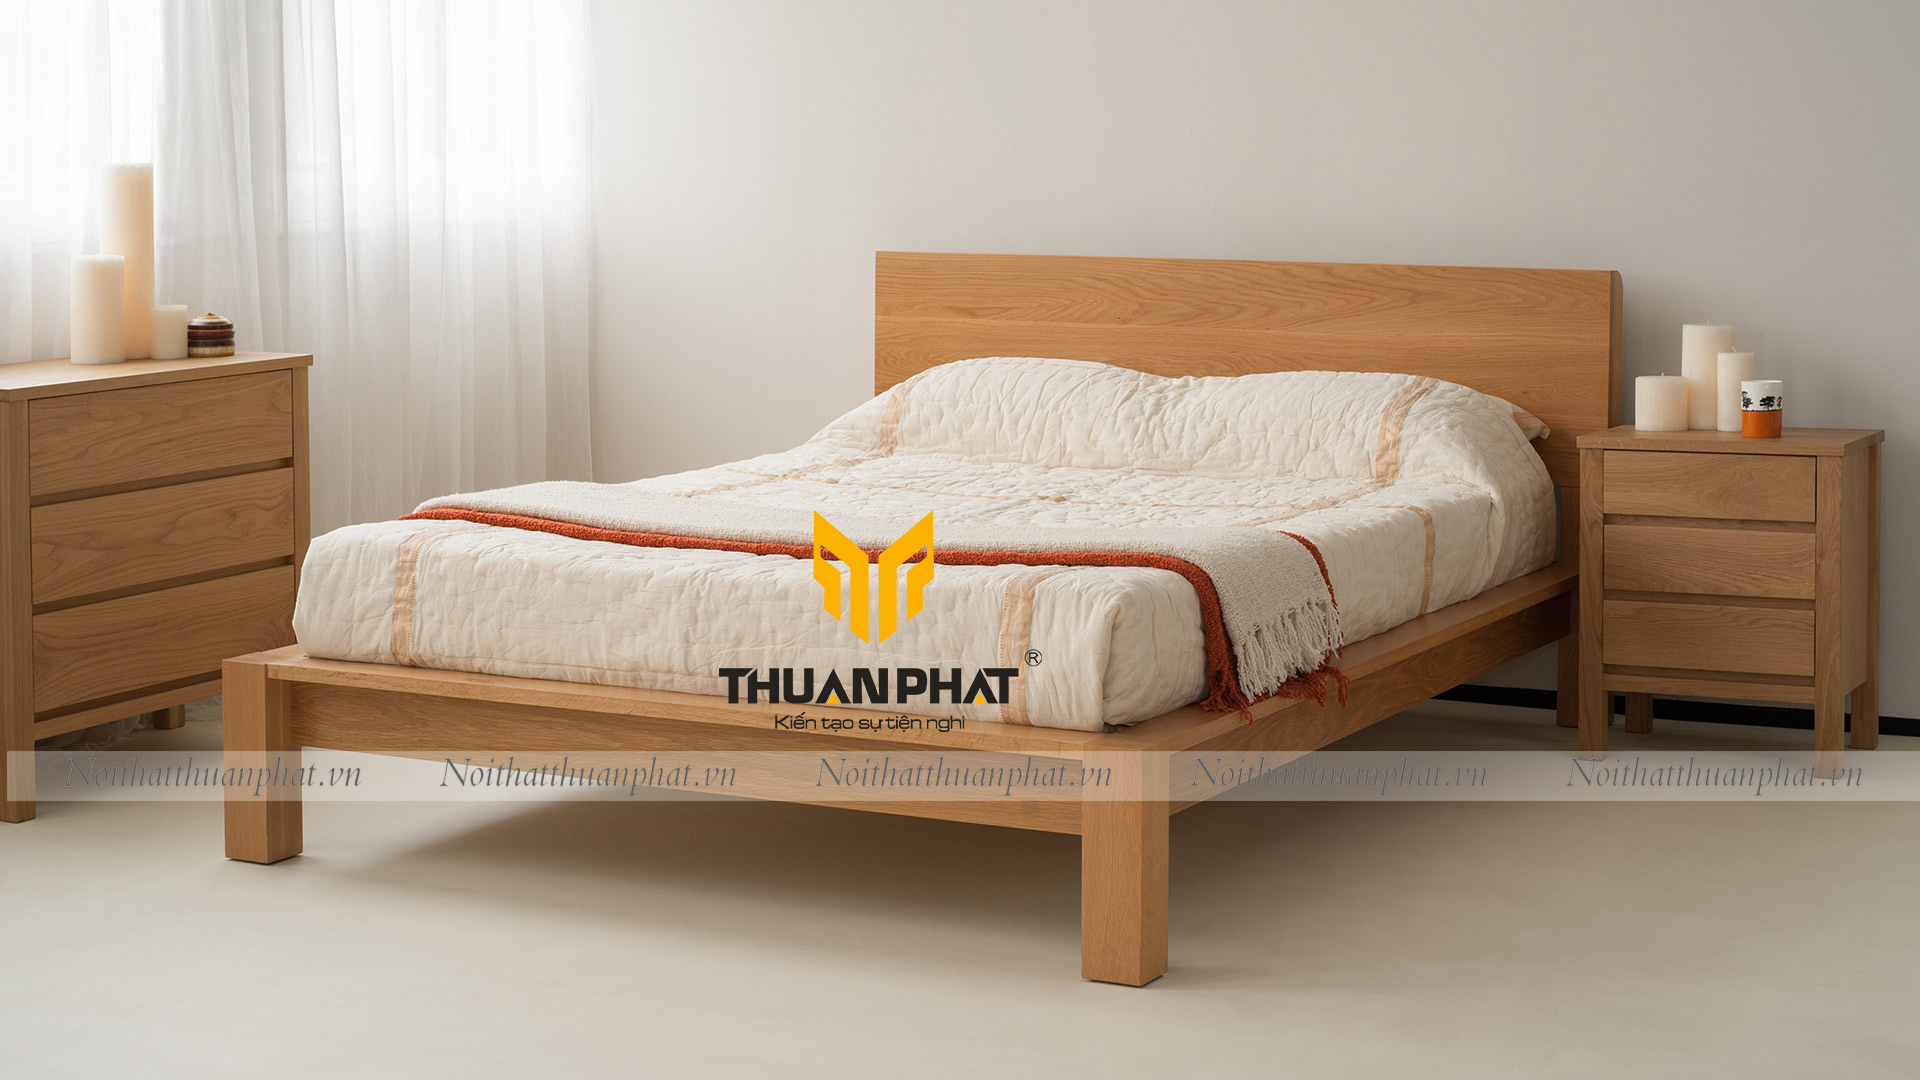 Bộ giường ngủ 4 chân năm 2024 được thiết kế độc đáo, sản xuất với công nghệ tiên tiến, mang đến sự thoải mái và giấc ngủ ngon cho người dùng. Với chất liệu chắc chắn, kiểu dáng hiện đại, giường như một tác phẩm nghệ thuật sẽ làm tăng tính thẩm mĩ cho phòng ngủ của bạn.